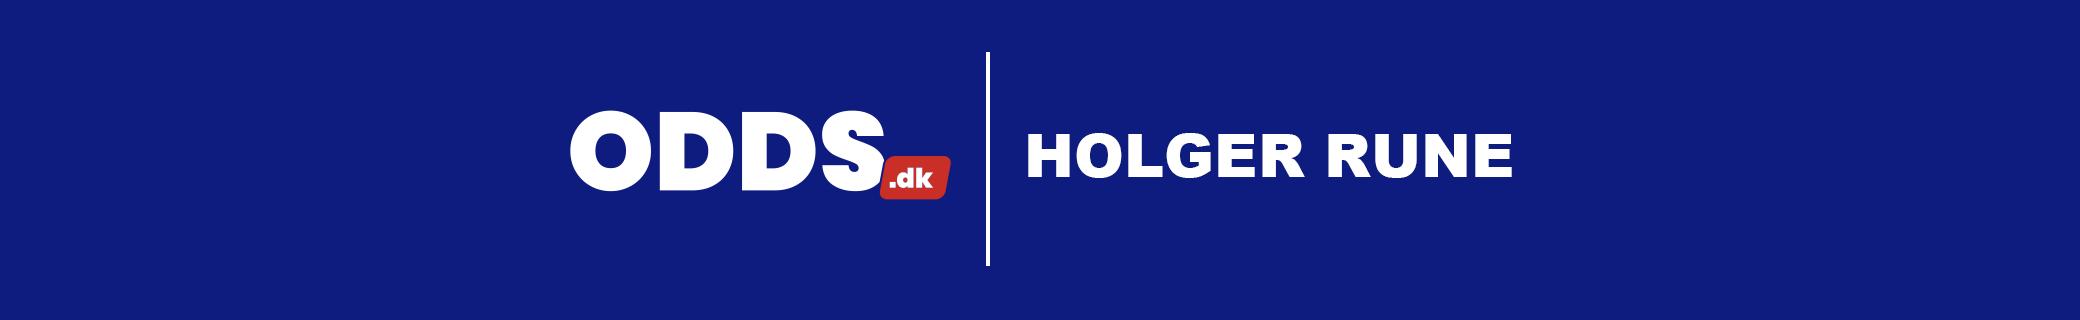 Kampprogram for Holger Rune